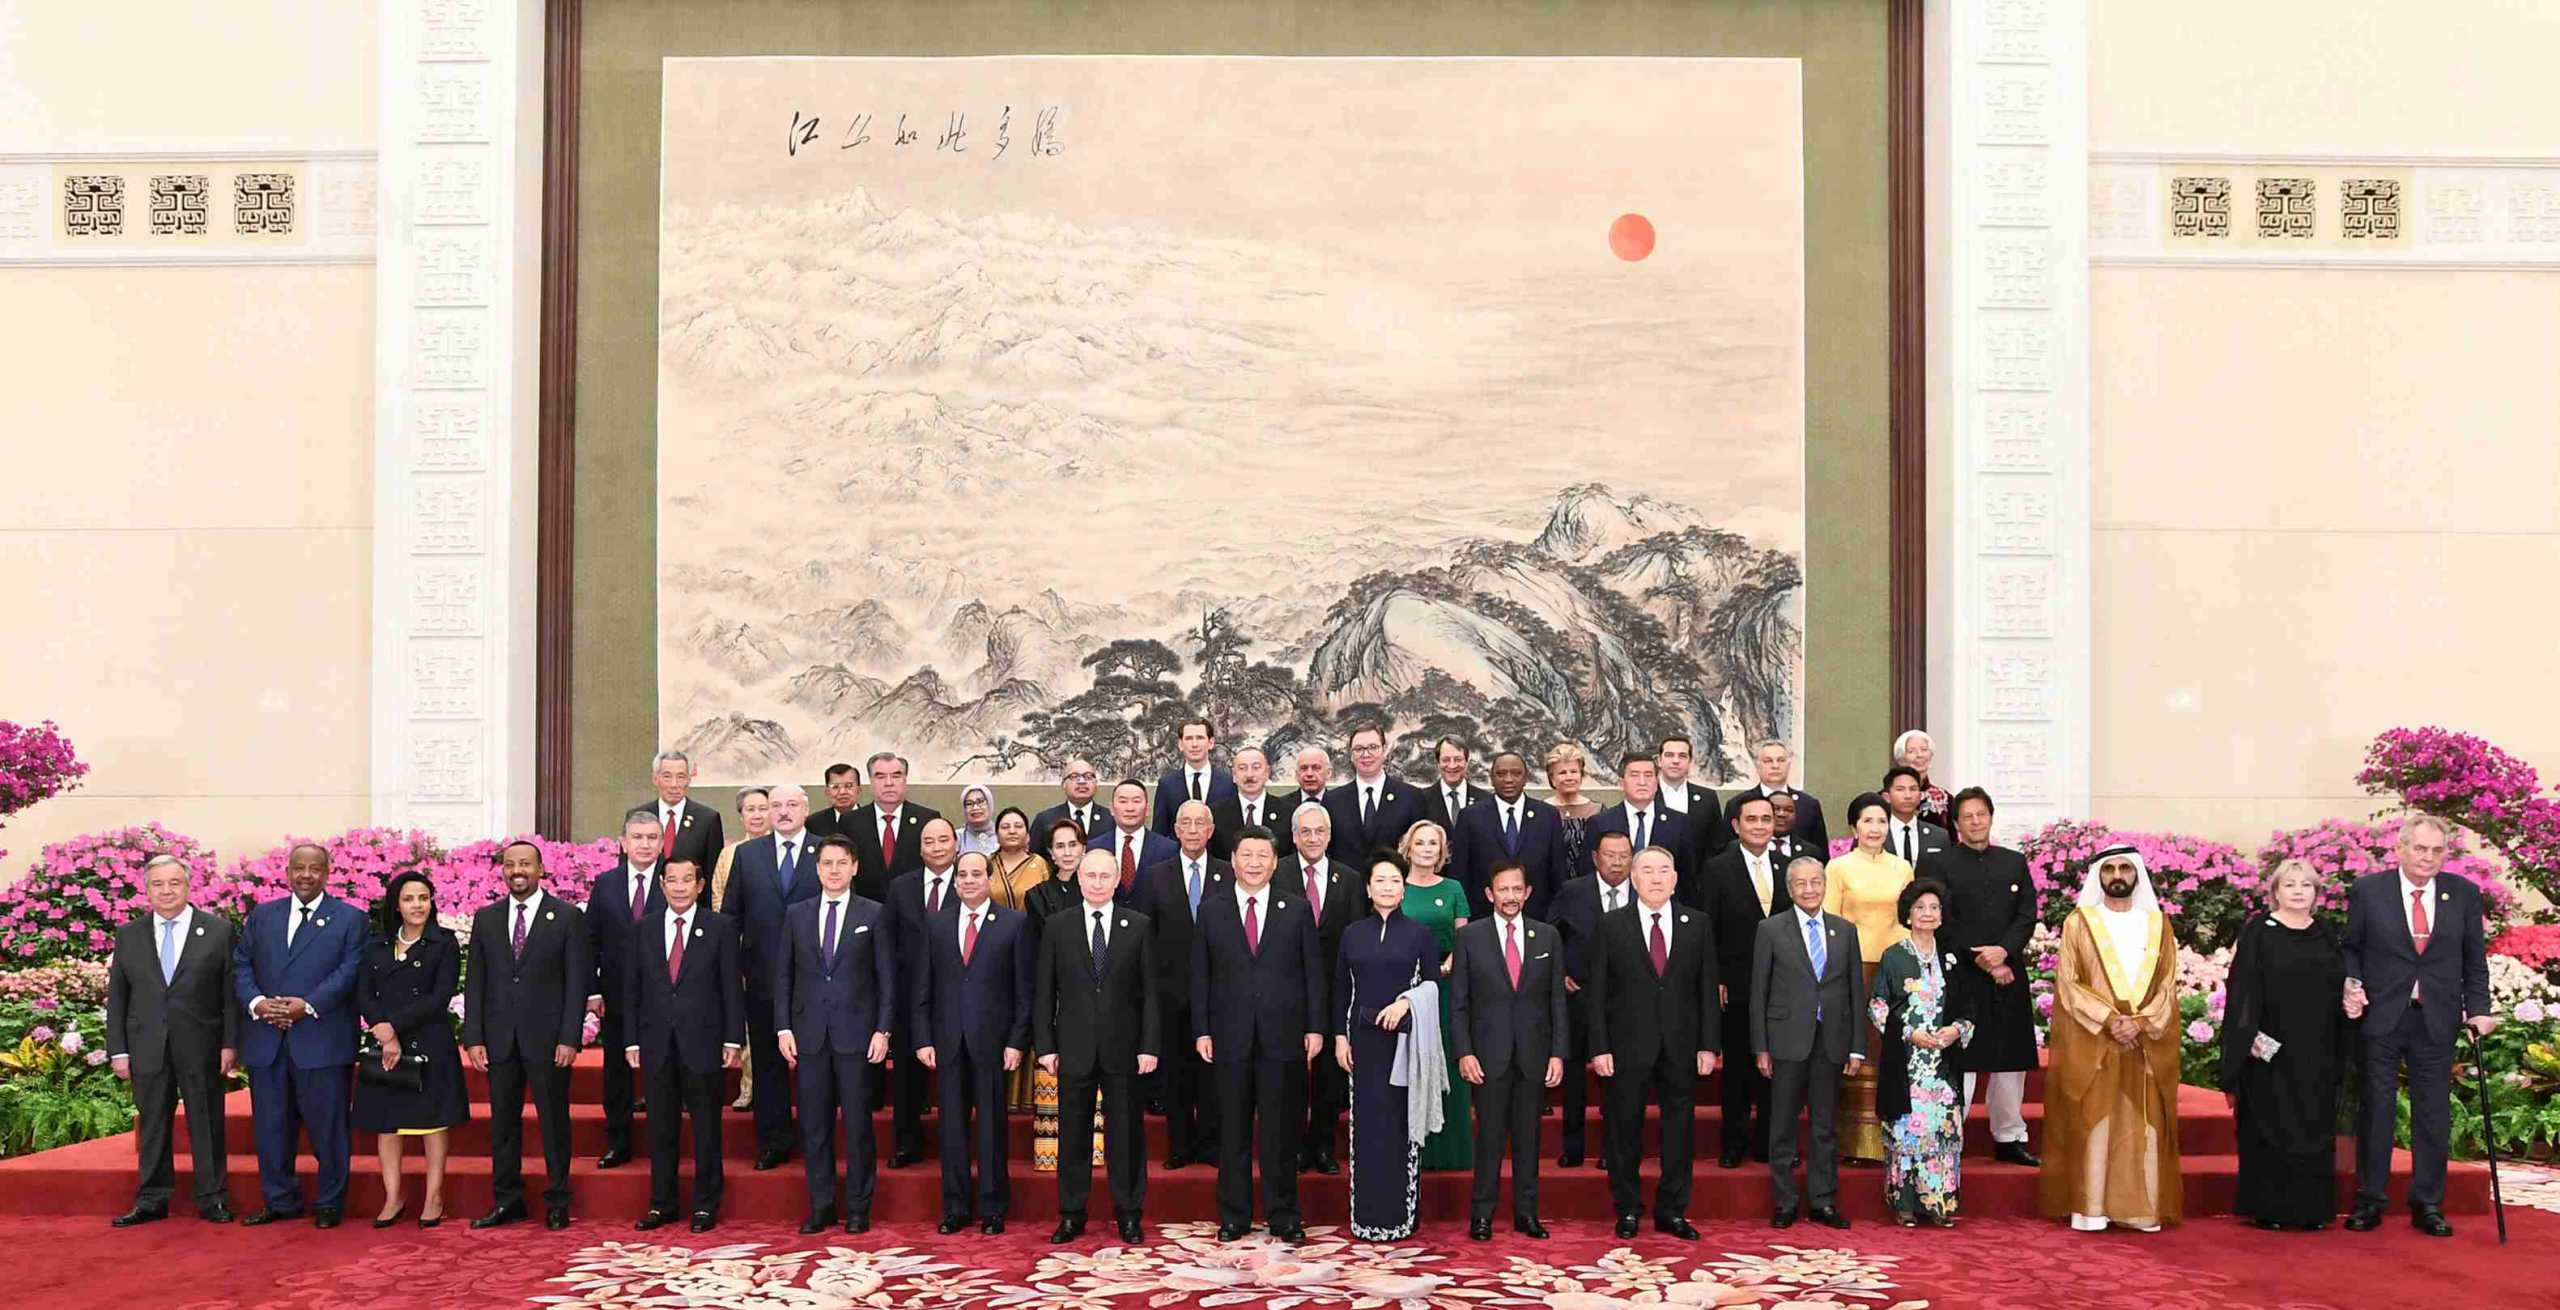 中国领导人欢迎出席第二届“一带一路”国际合作高峰论坛的外方领导人夫妇及嘉宾